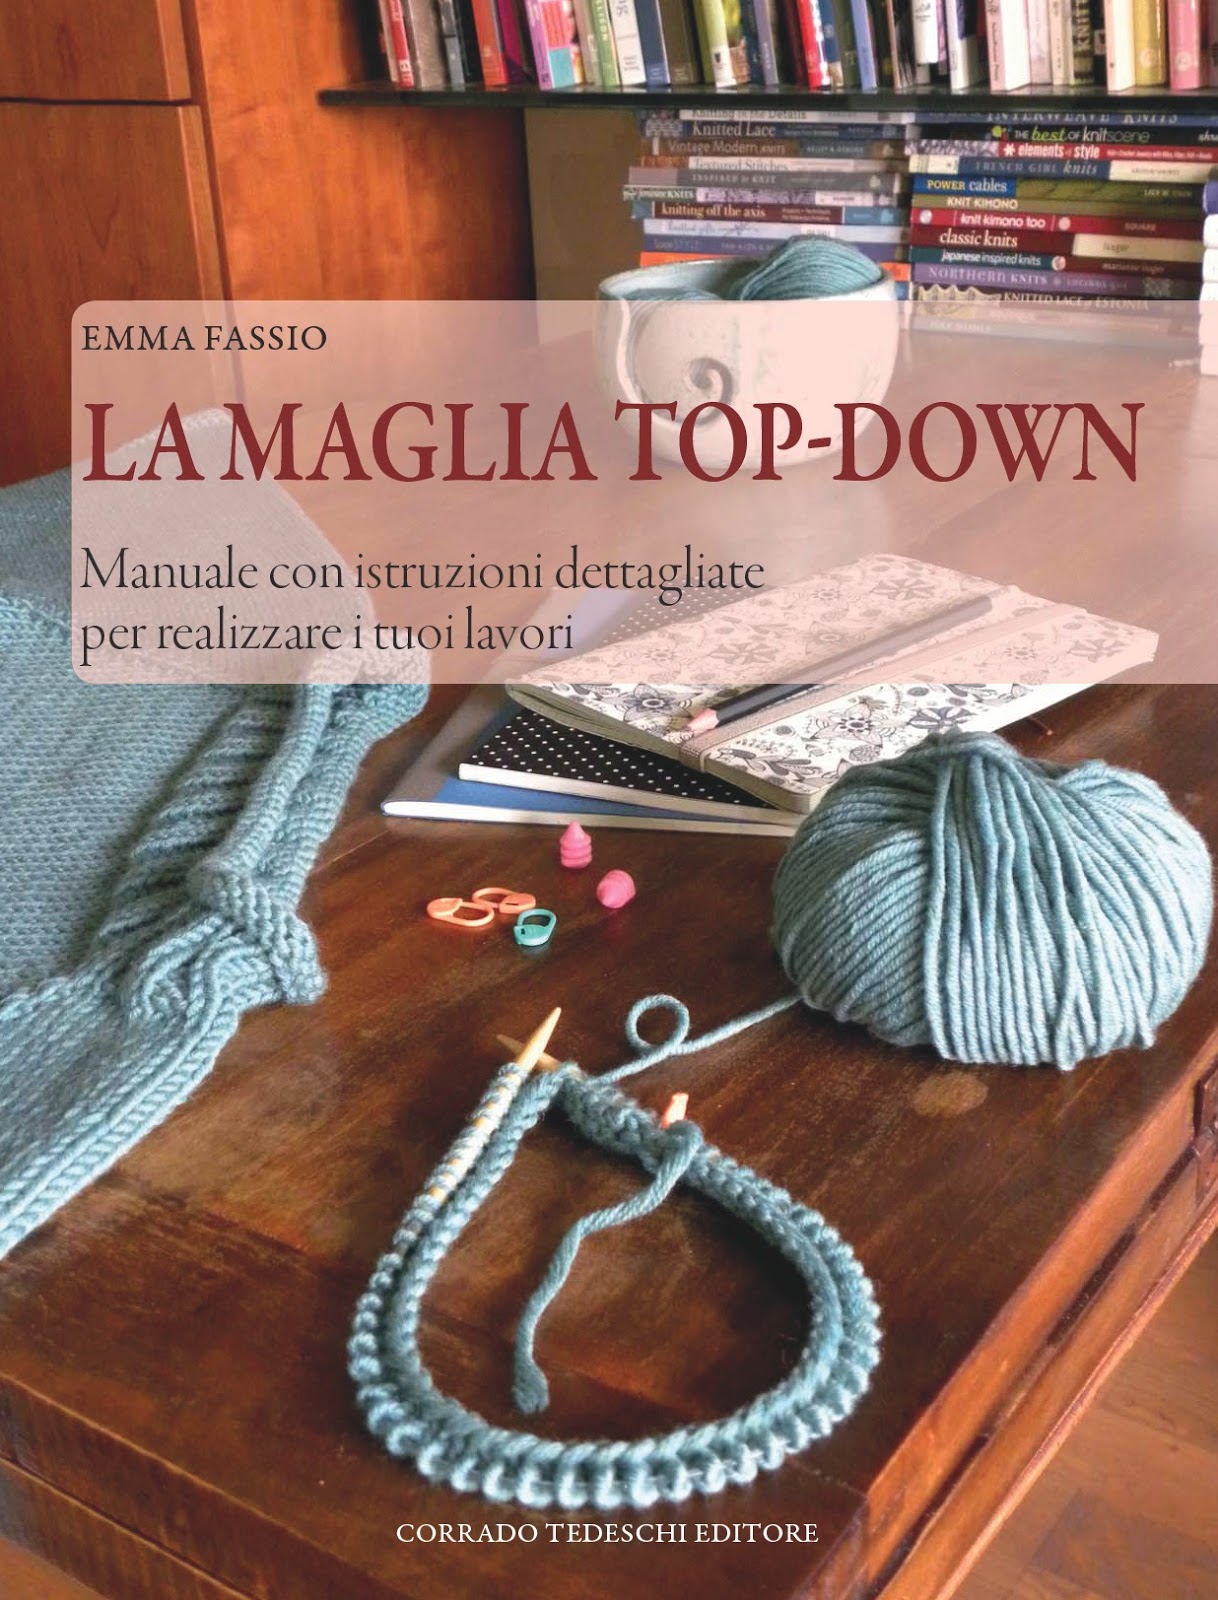 Copertina libro Emma Fassio La maglia top-down